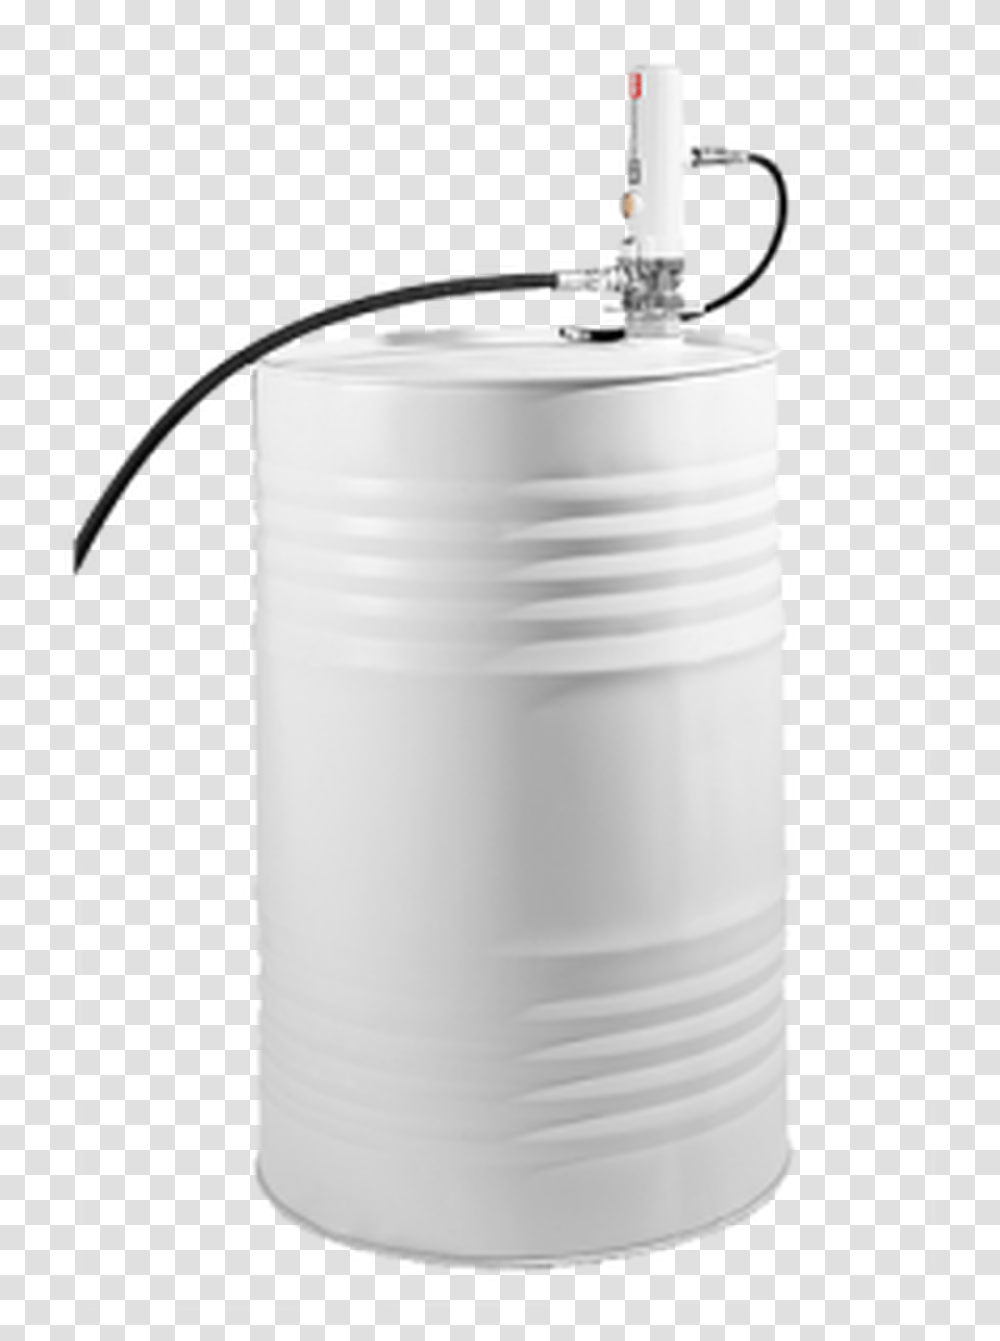 Samson 422 Pump And Hose Package For 55 Gal Light, Barrel, Keg, Sink Faucet, Milk Transparent Png